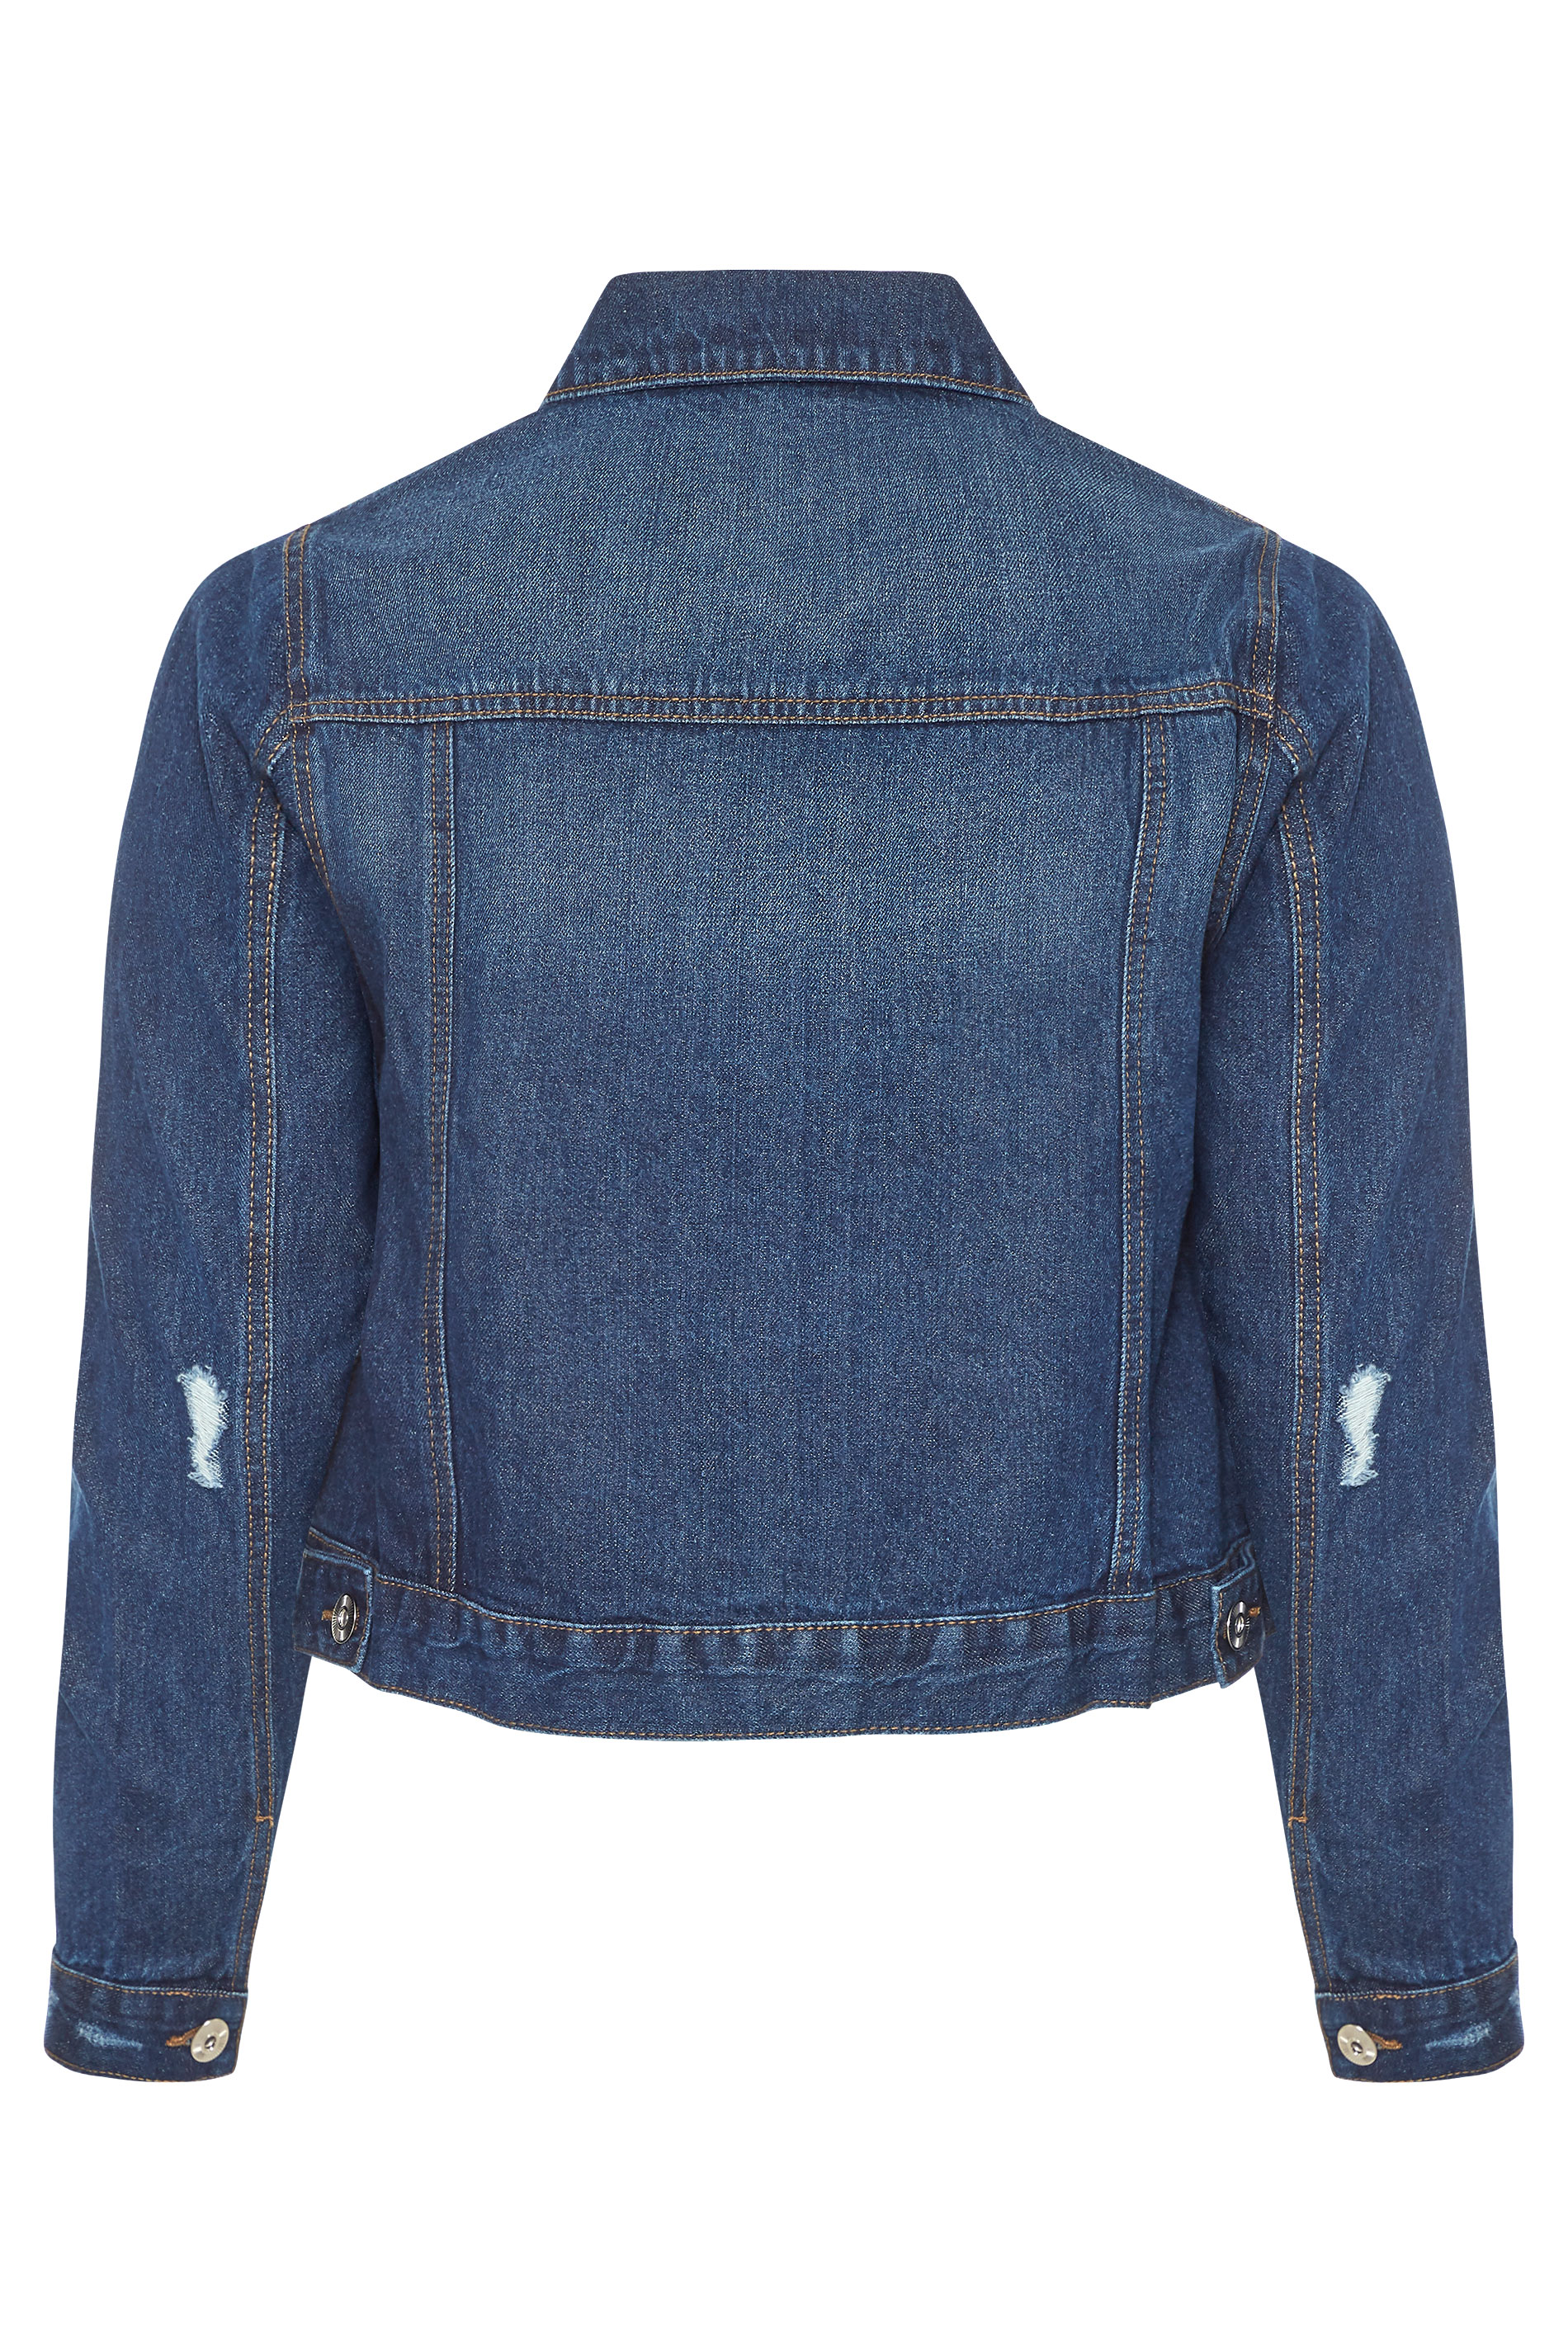 Indigo Blue Distressed Denim Jacket | Yours Clothing